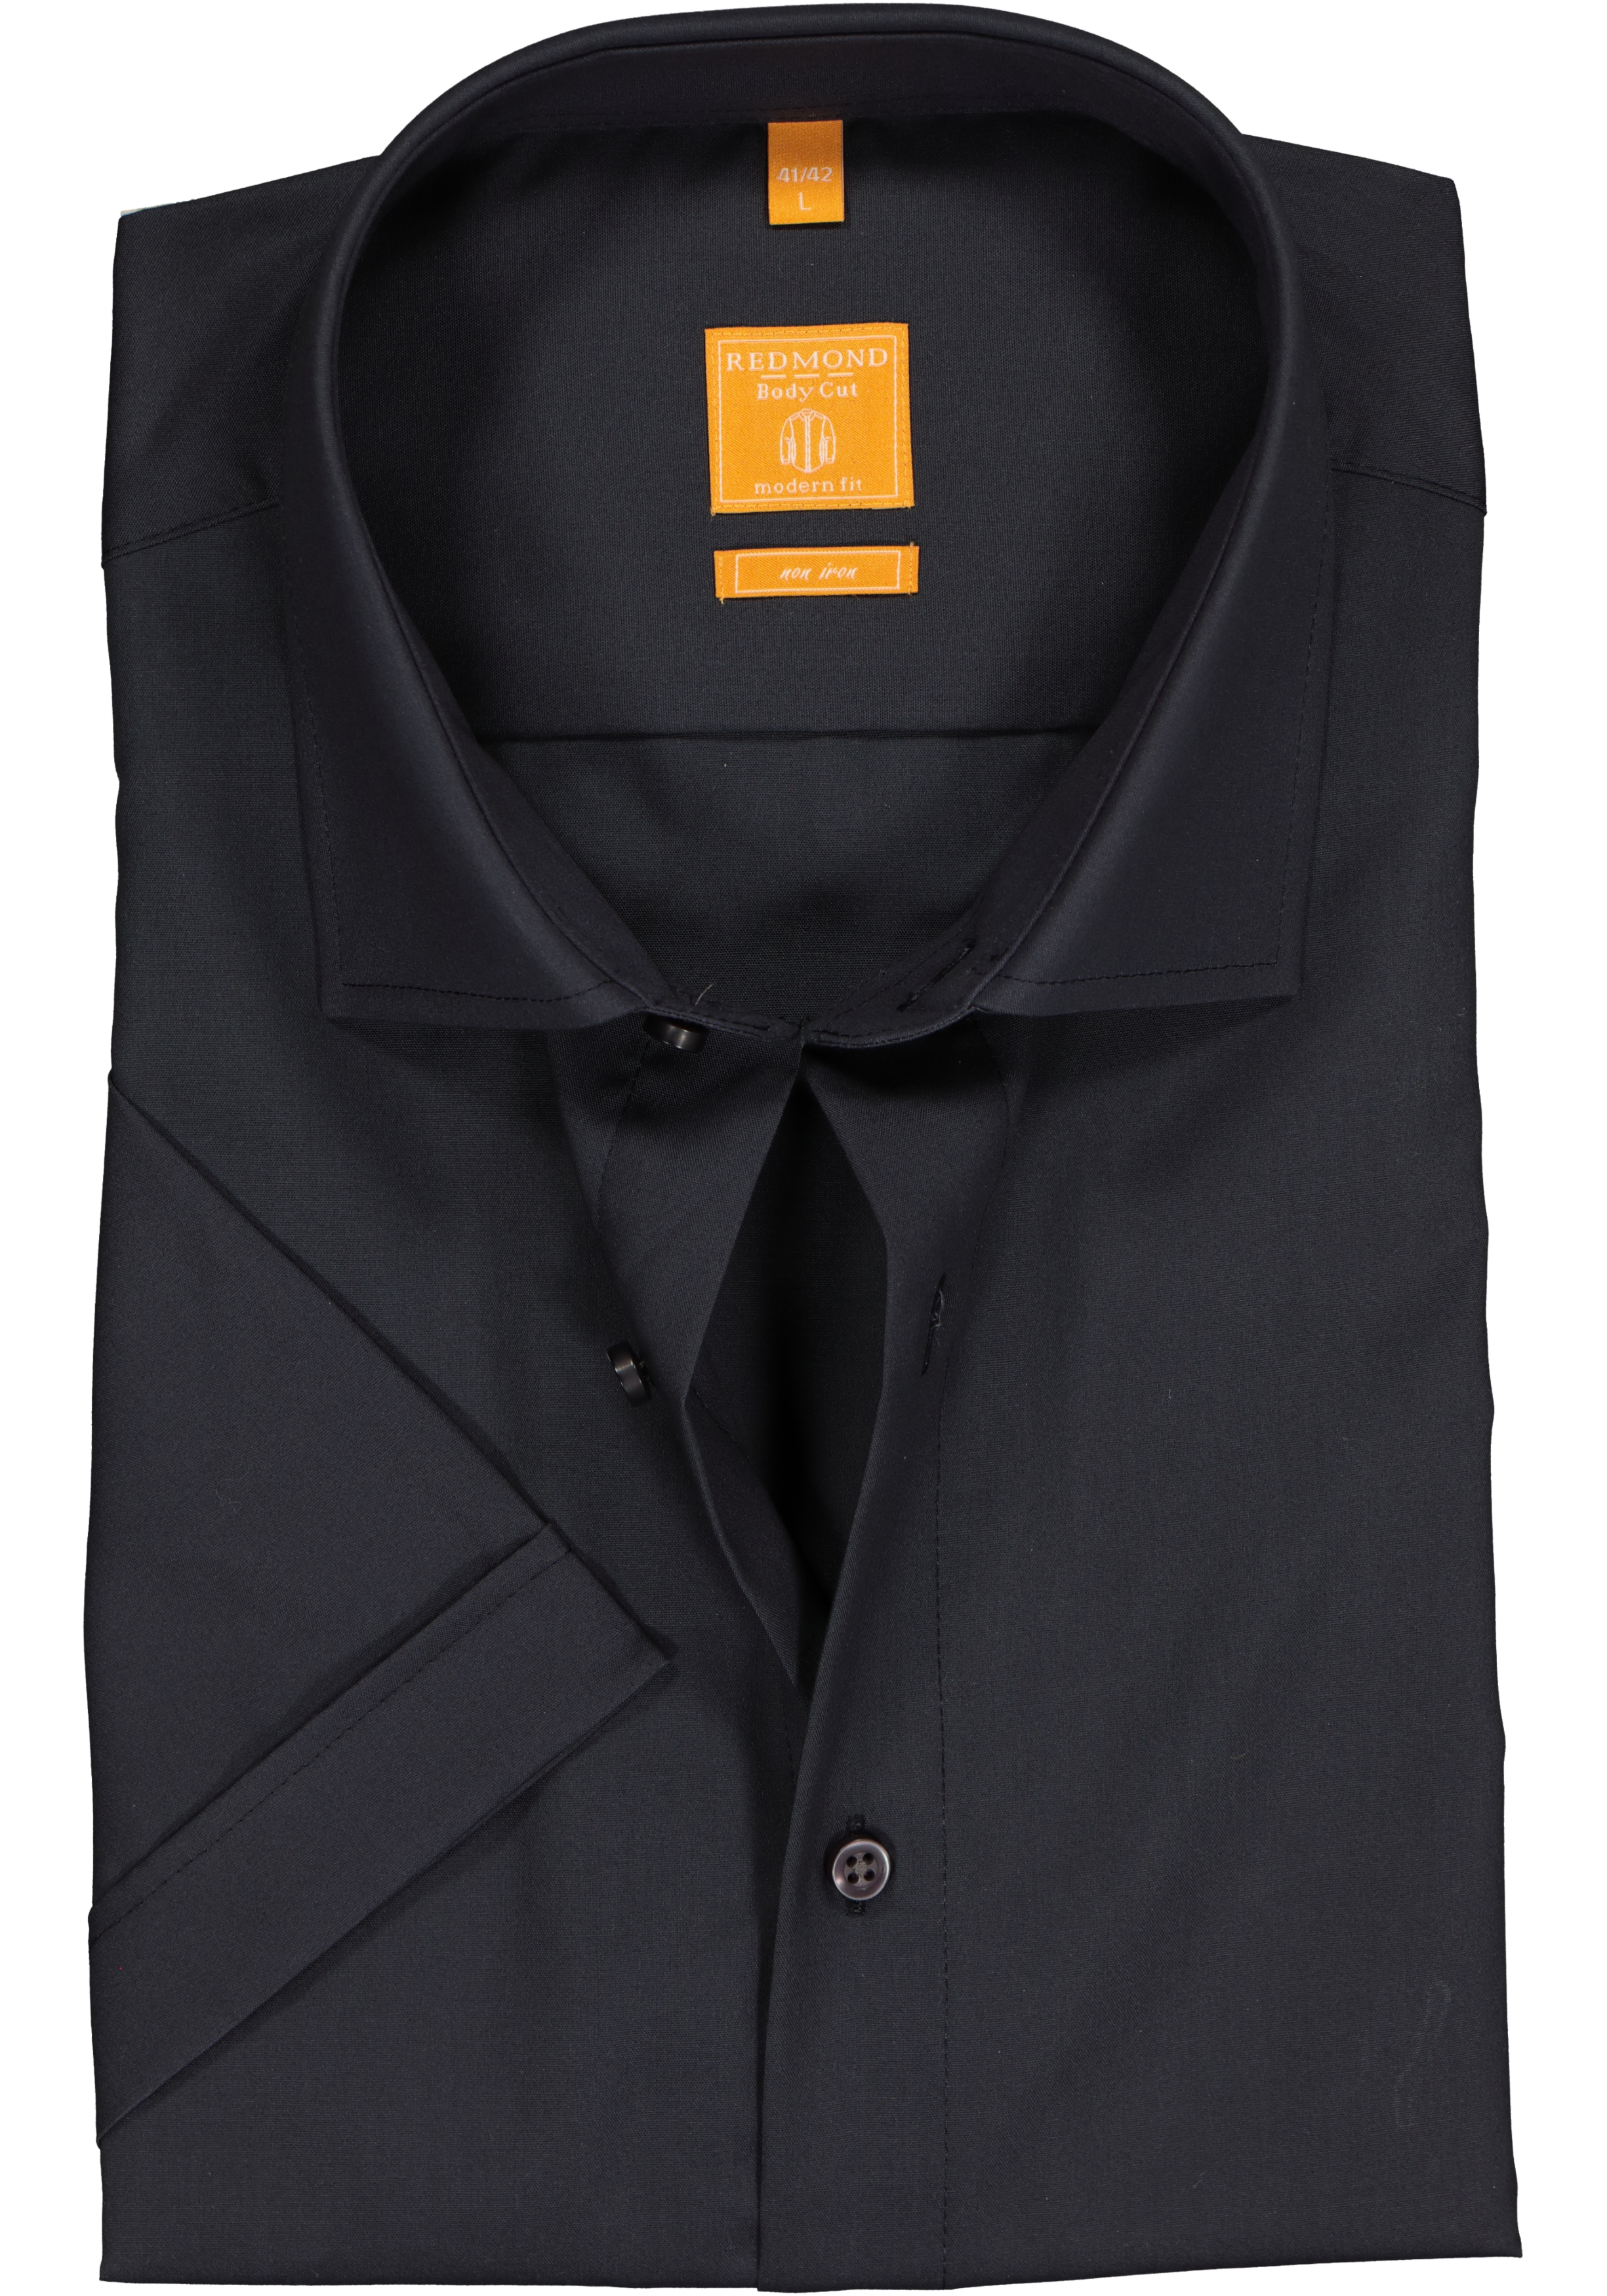 Redmond modern fit overhemd, korte mouw, antraciet grijs